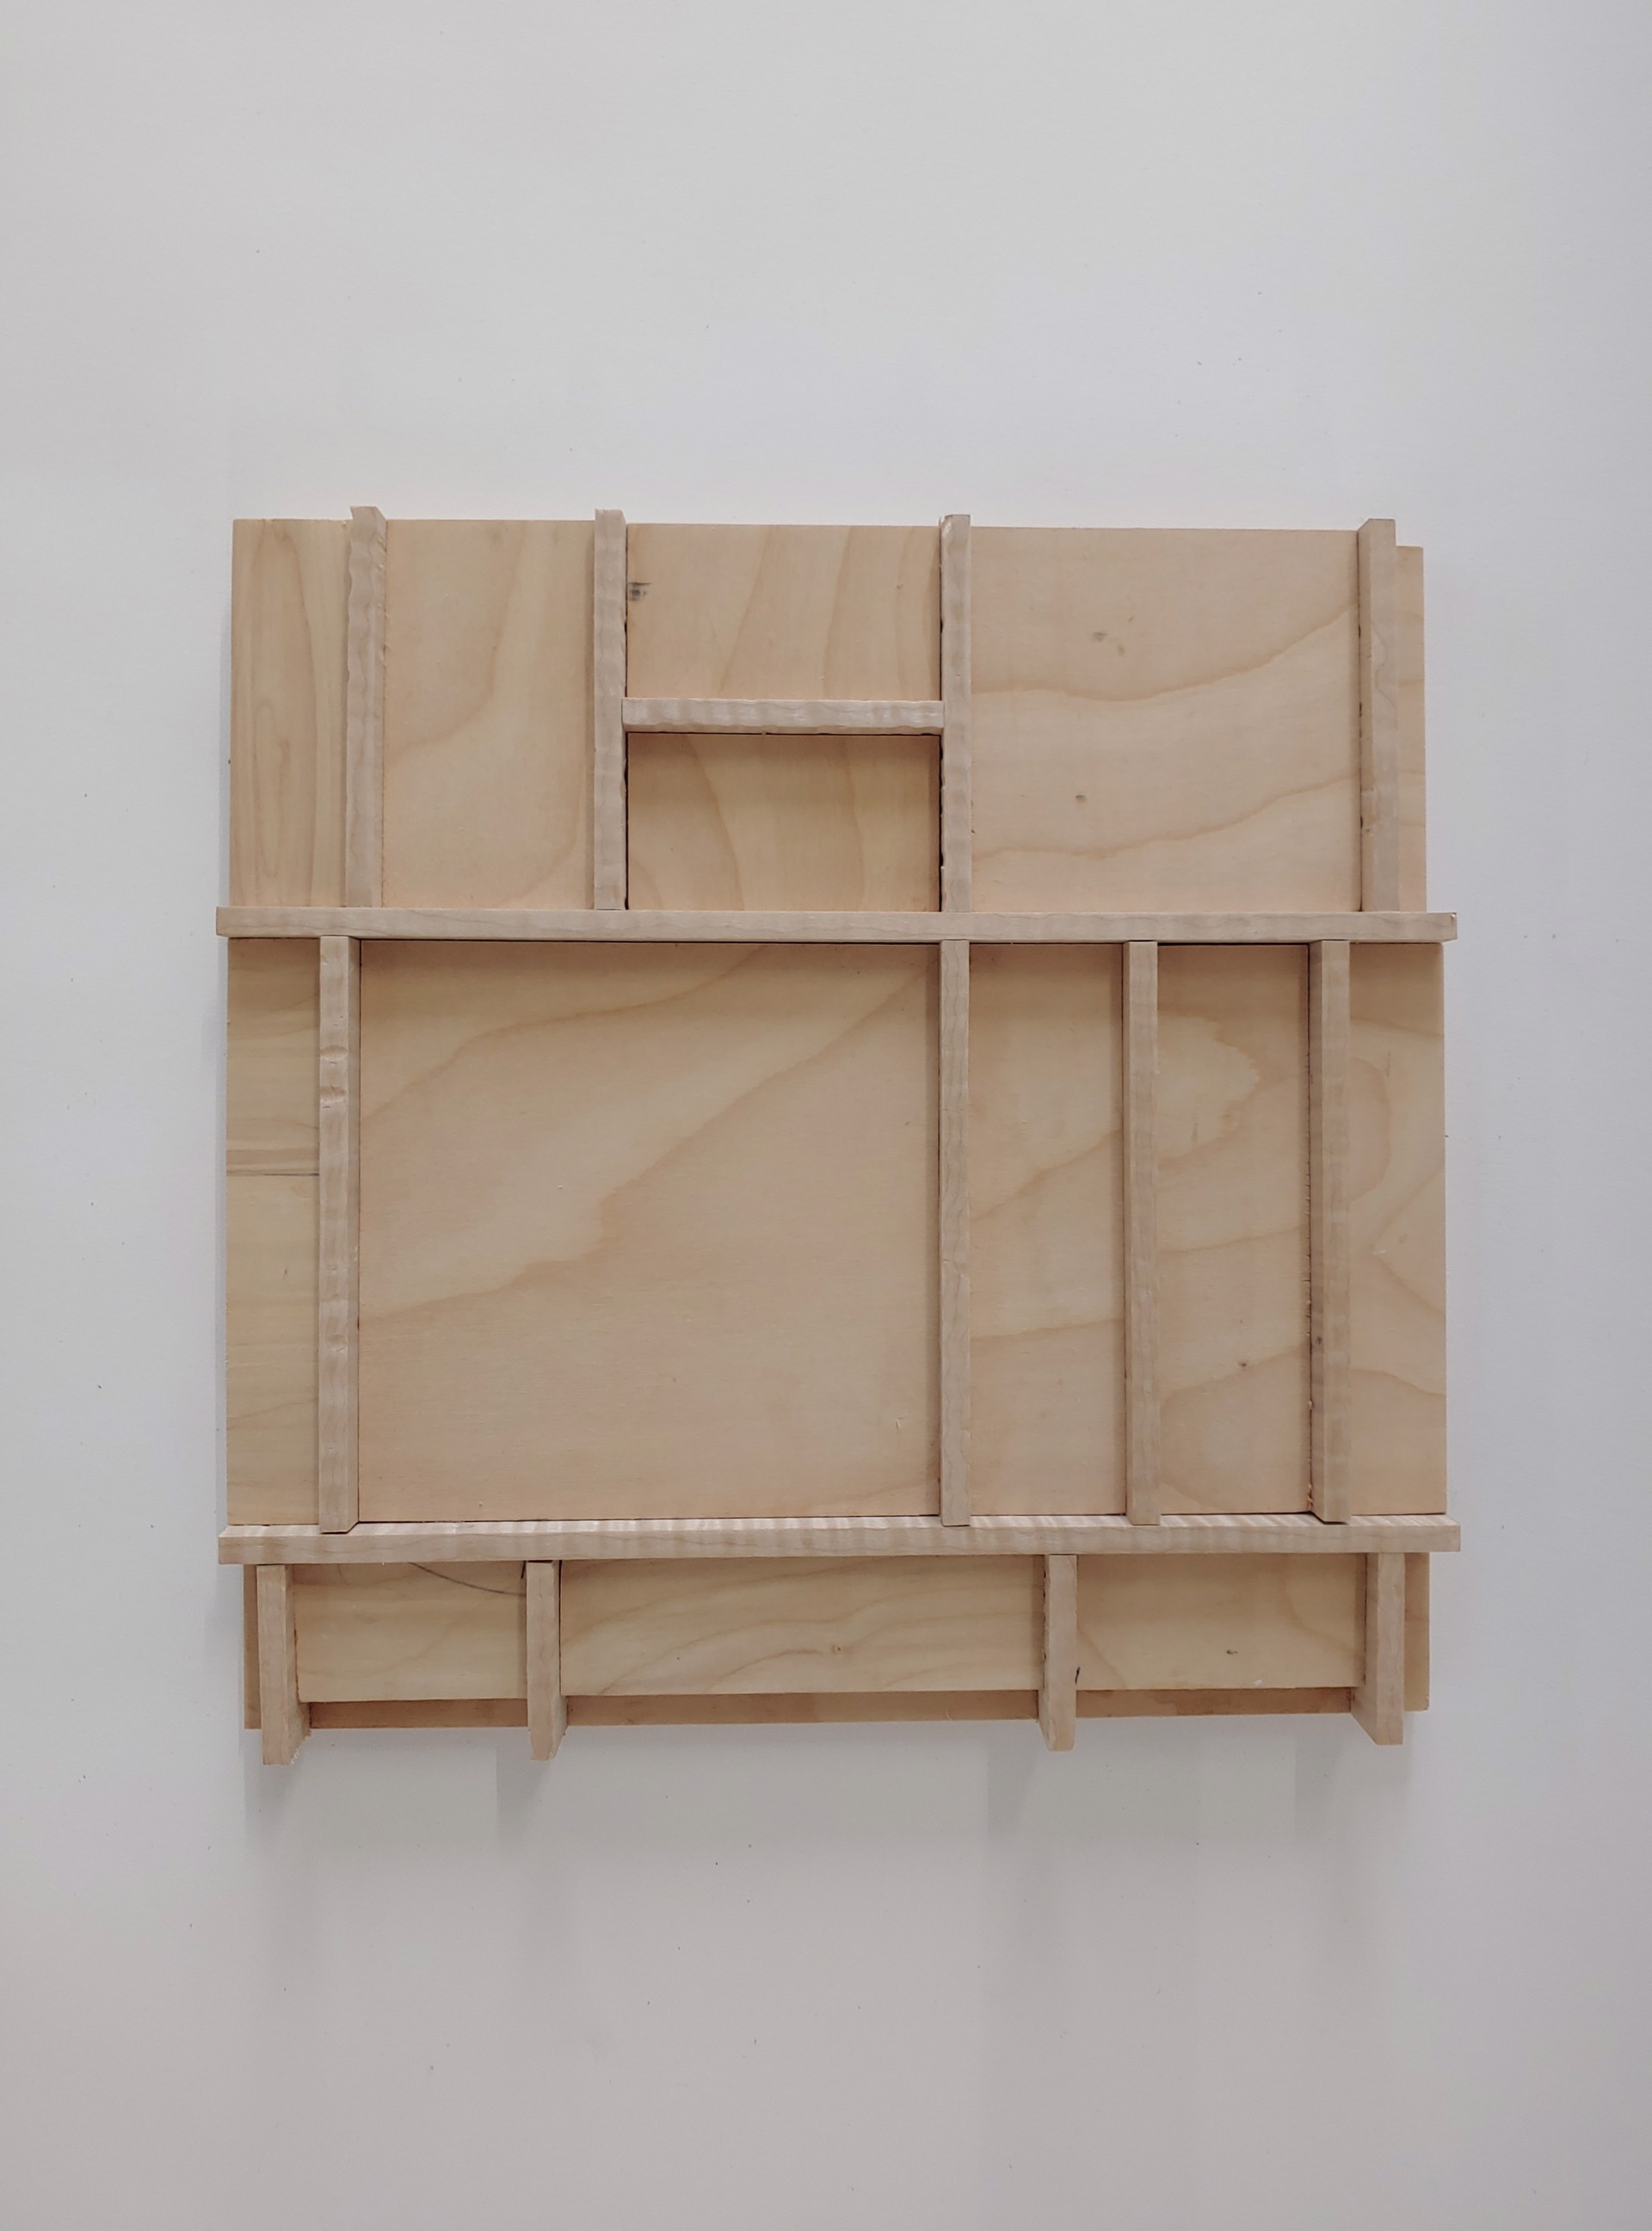 Empty Wooden Grid- Wood Sculpture by David Amdur